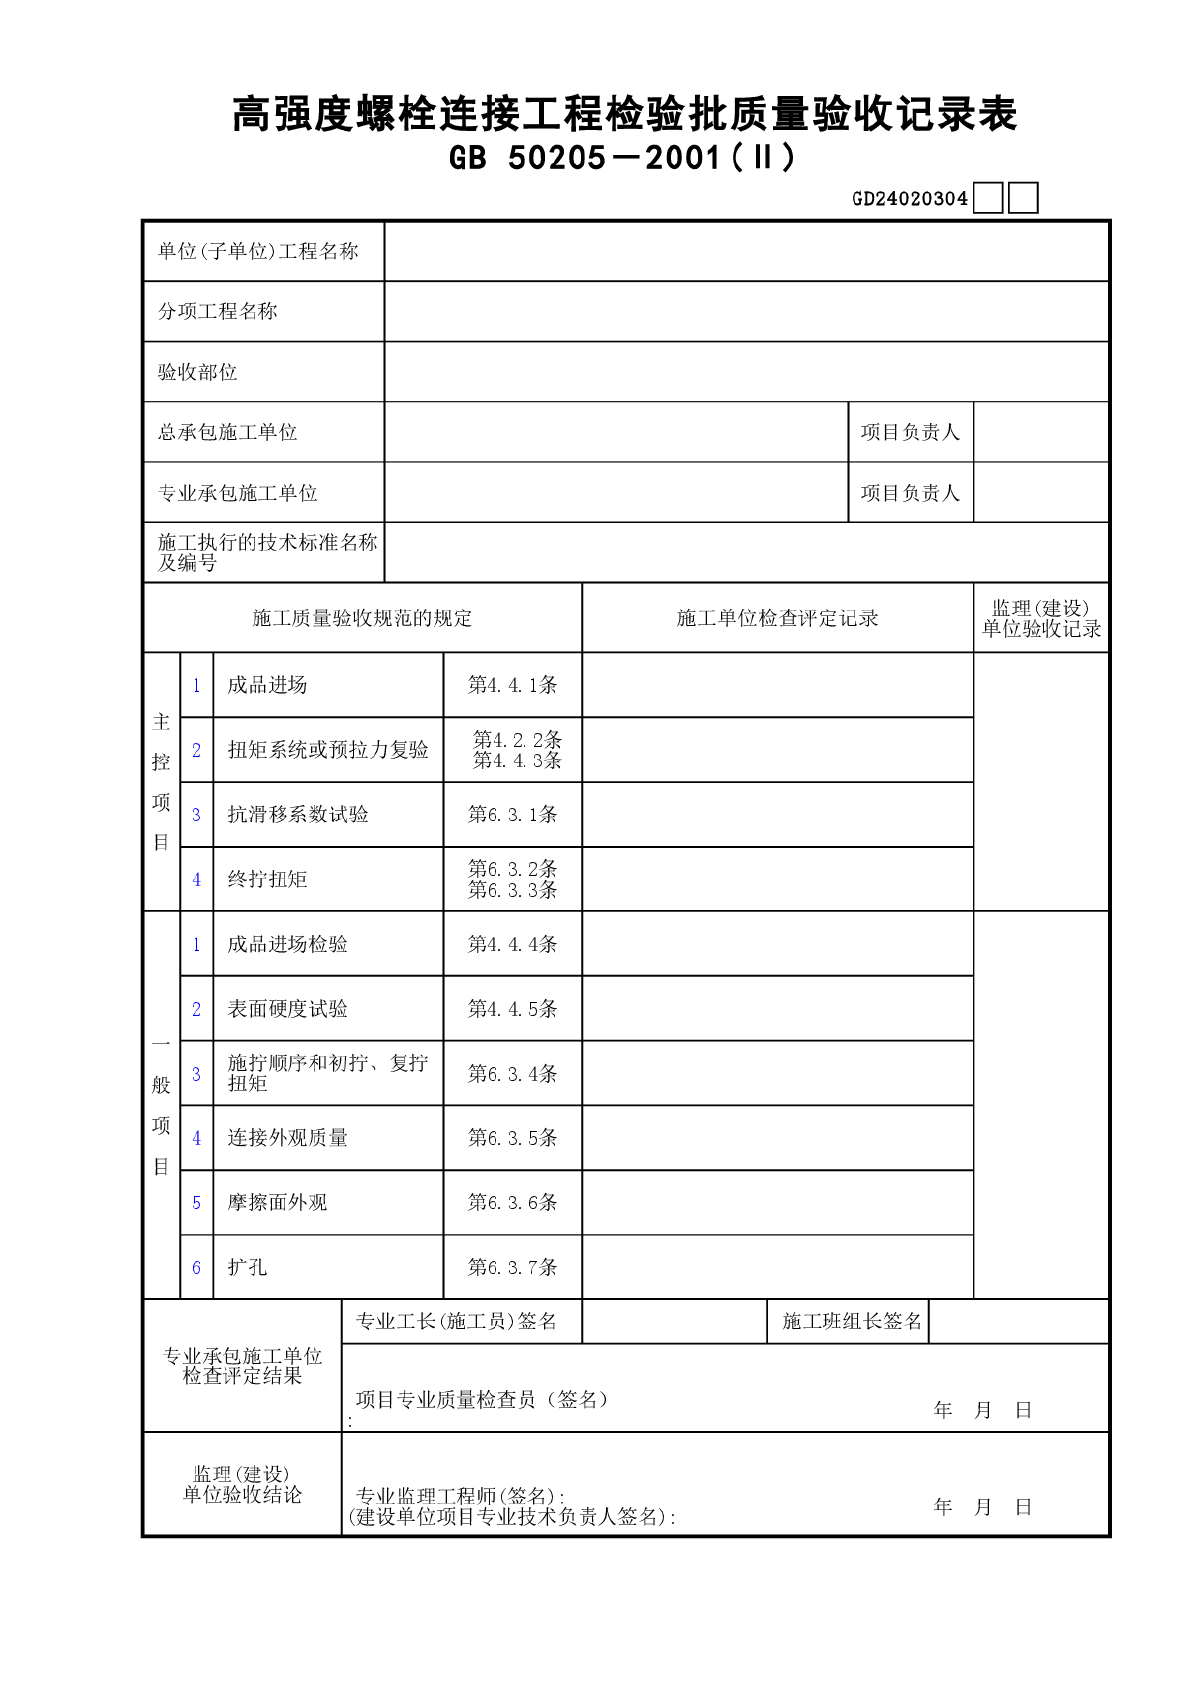 04高强度螺栓连接工程检验批质量验收记录表(Ⅱ)GD24020304-图一